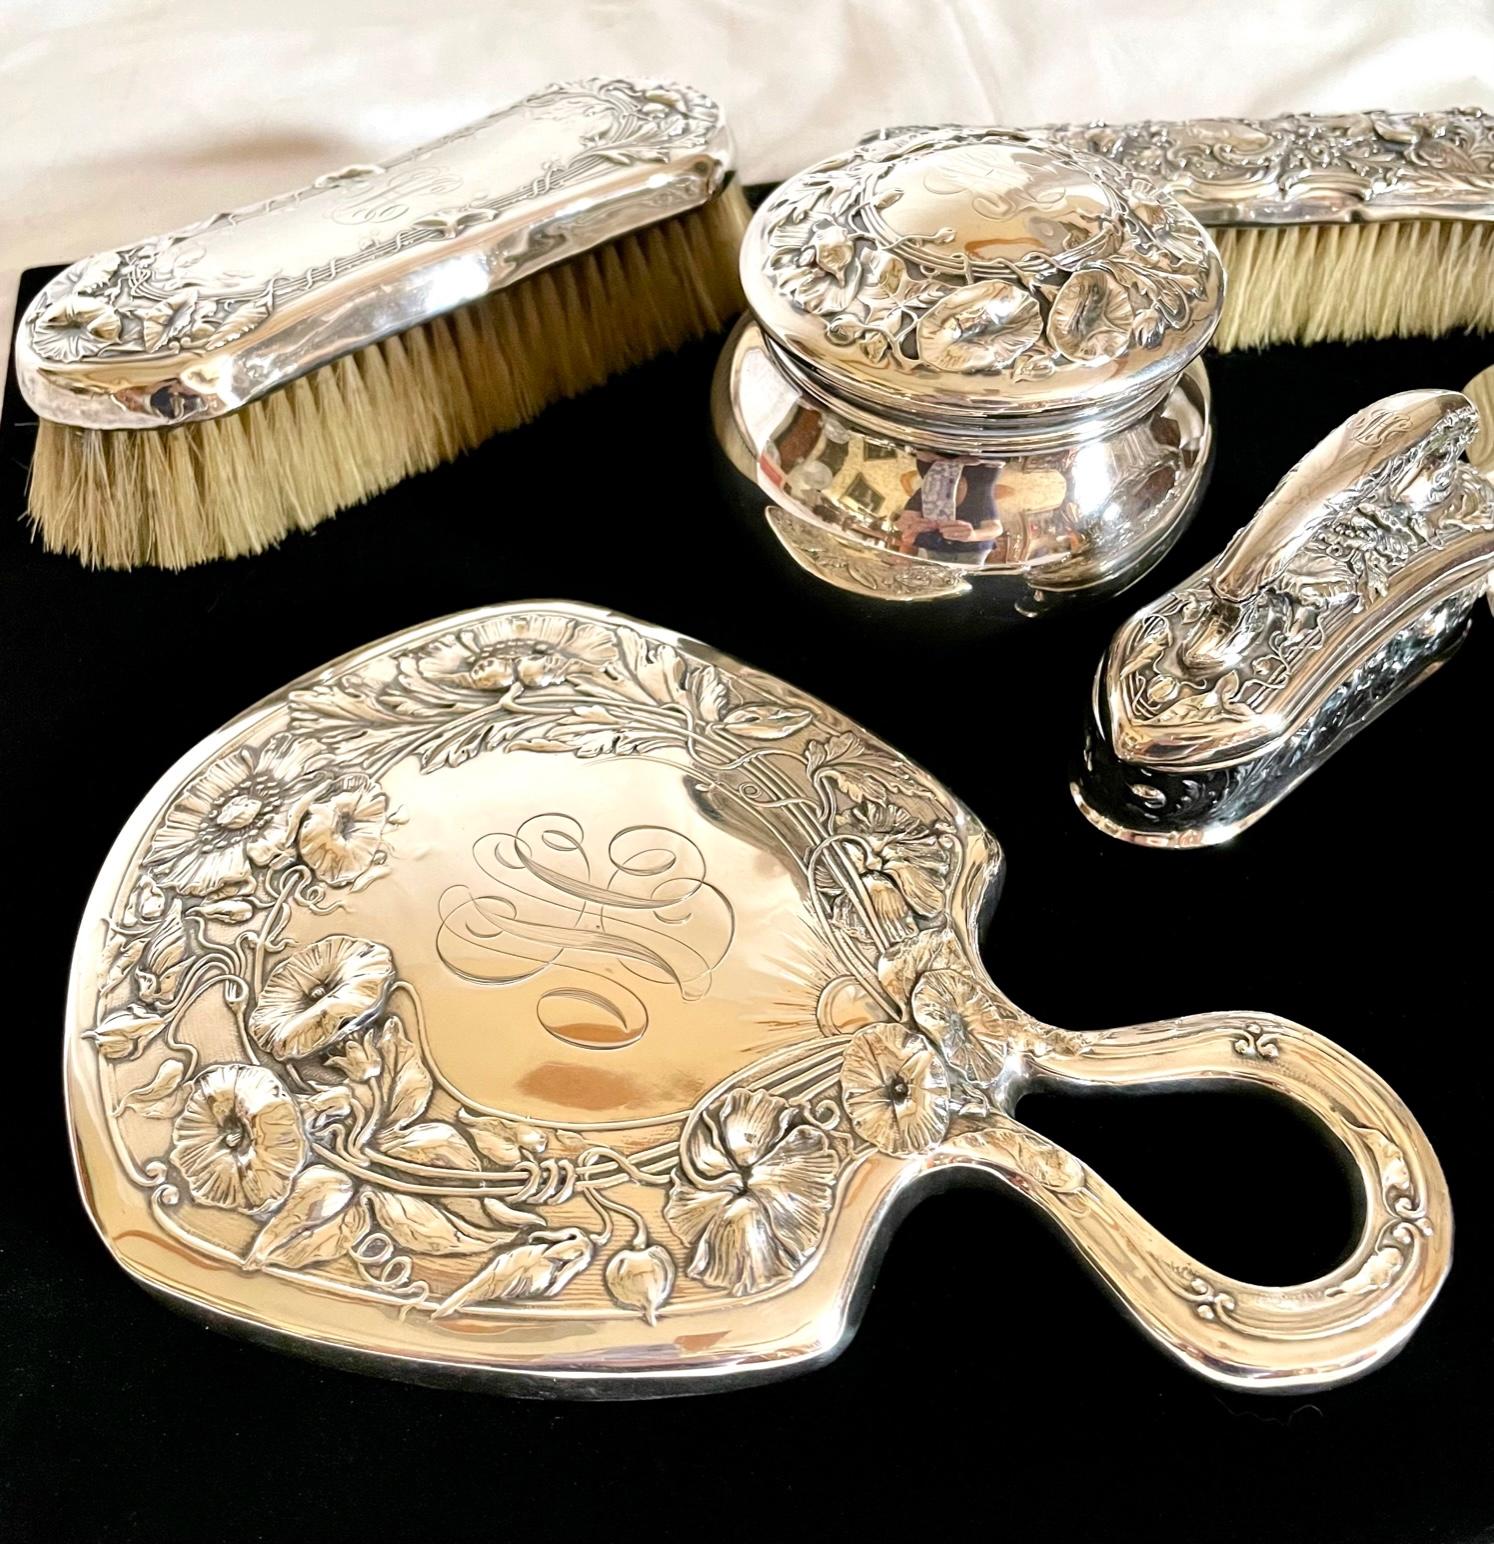 19. Jahrhundert Gorham Art Nouveau Sterling Silber Vanity Set, 7 Stück.

Dieses atemberaubende Jugendstil-Set aus Sterlingsilber ist eine fantasievolle Kreation von Gorham. Jedes Teil des passenden Sets ist mit prächtigen Jugendstil-Prägungen